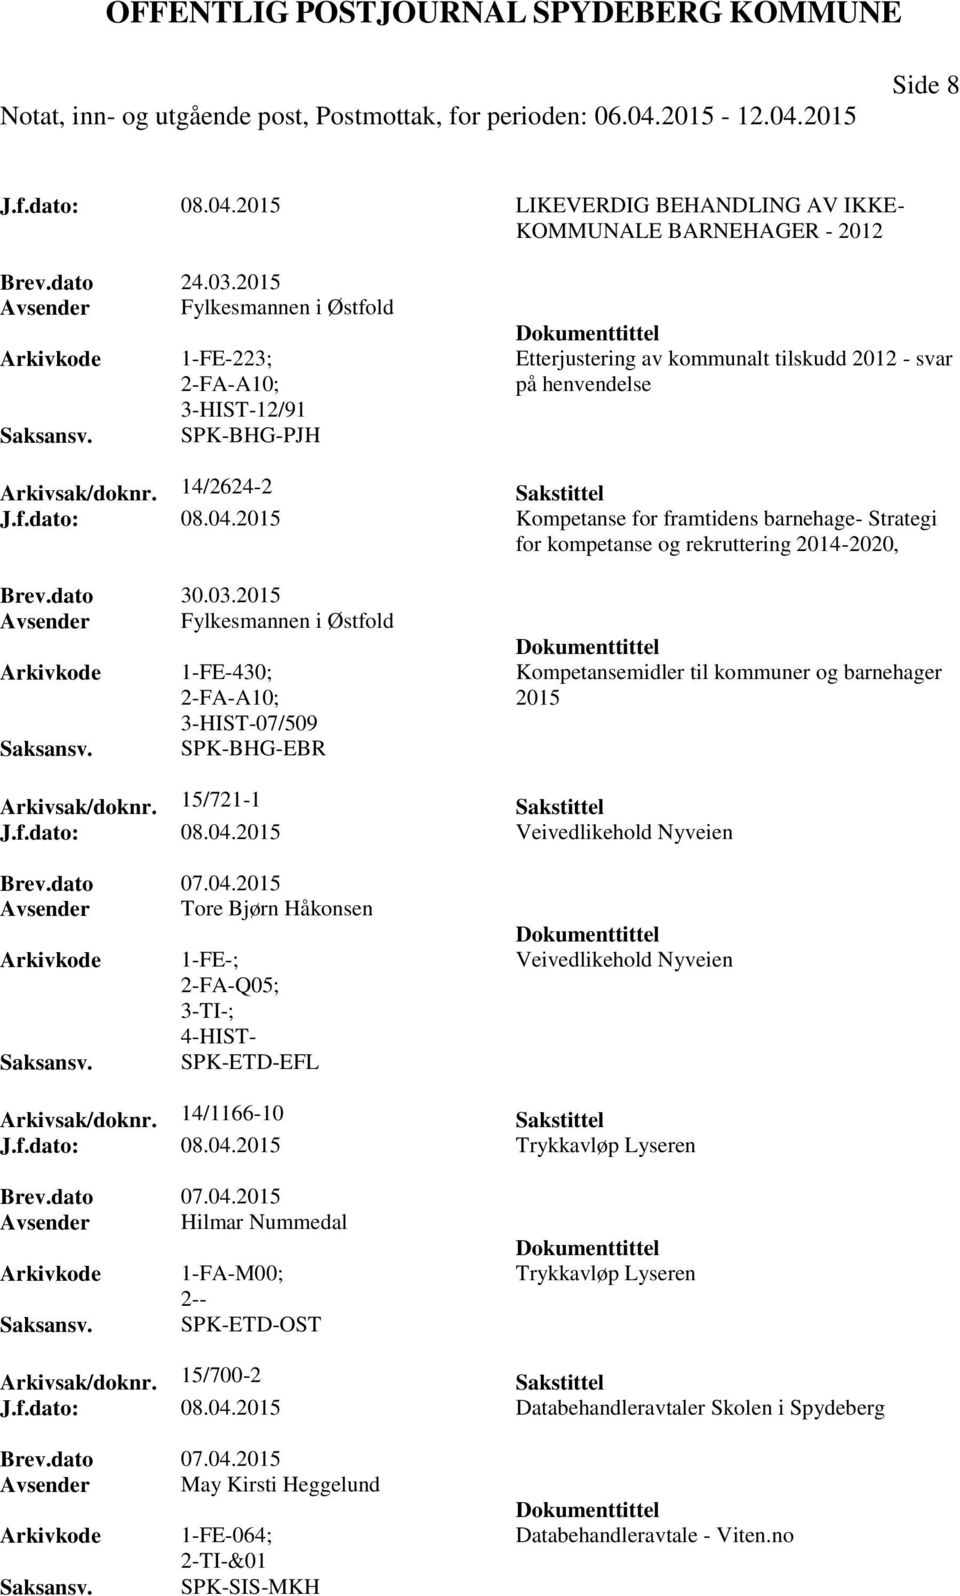 2015 Kompetanse for framtidens barnehage- Strategi for kompetanse og rekruttering 2014-2020, Brev.dato 30.03.